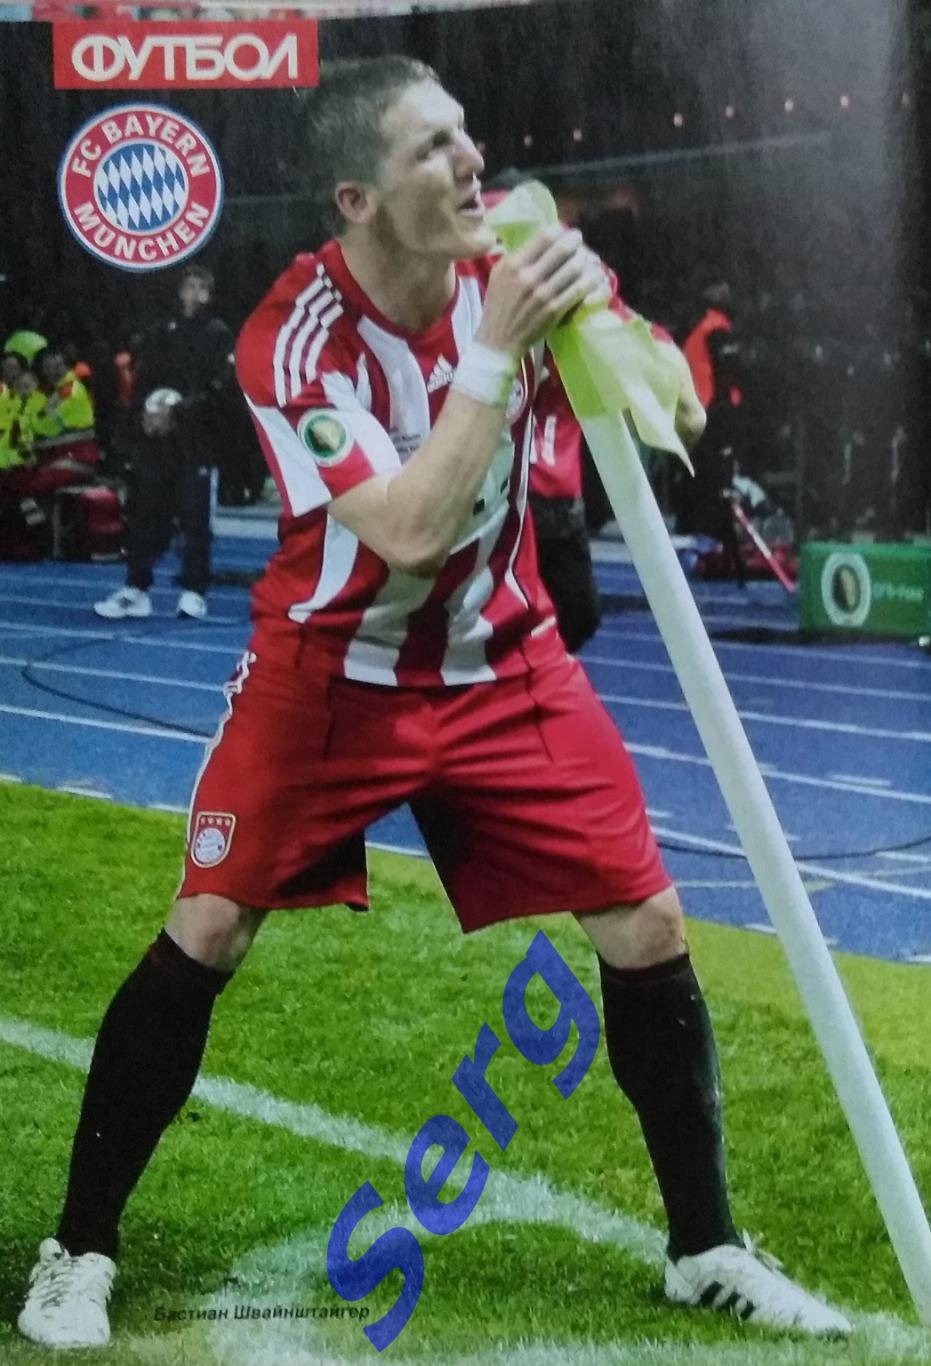 Спецвыпуск Великие клубы Бавария Мюнхен №12 2010 г. еженедельник Футбол 5